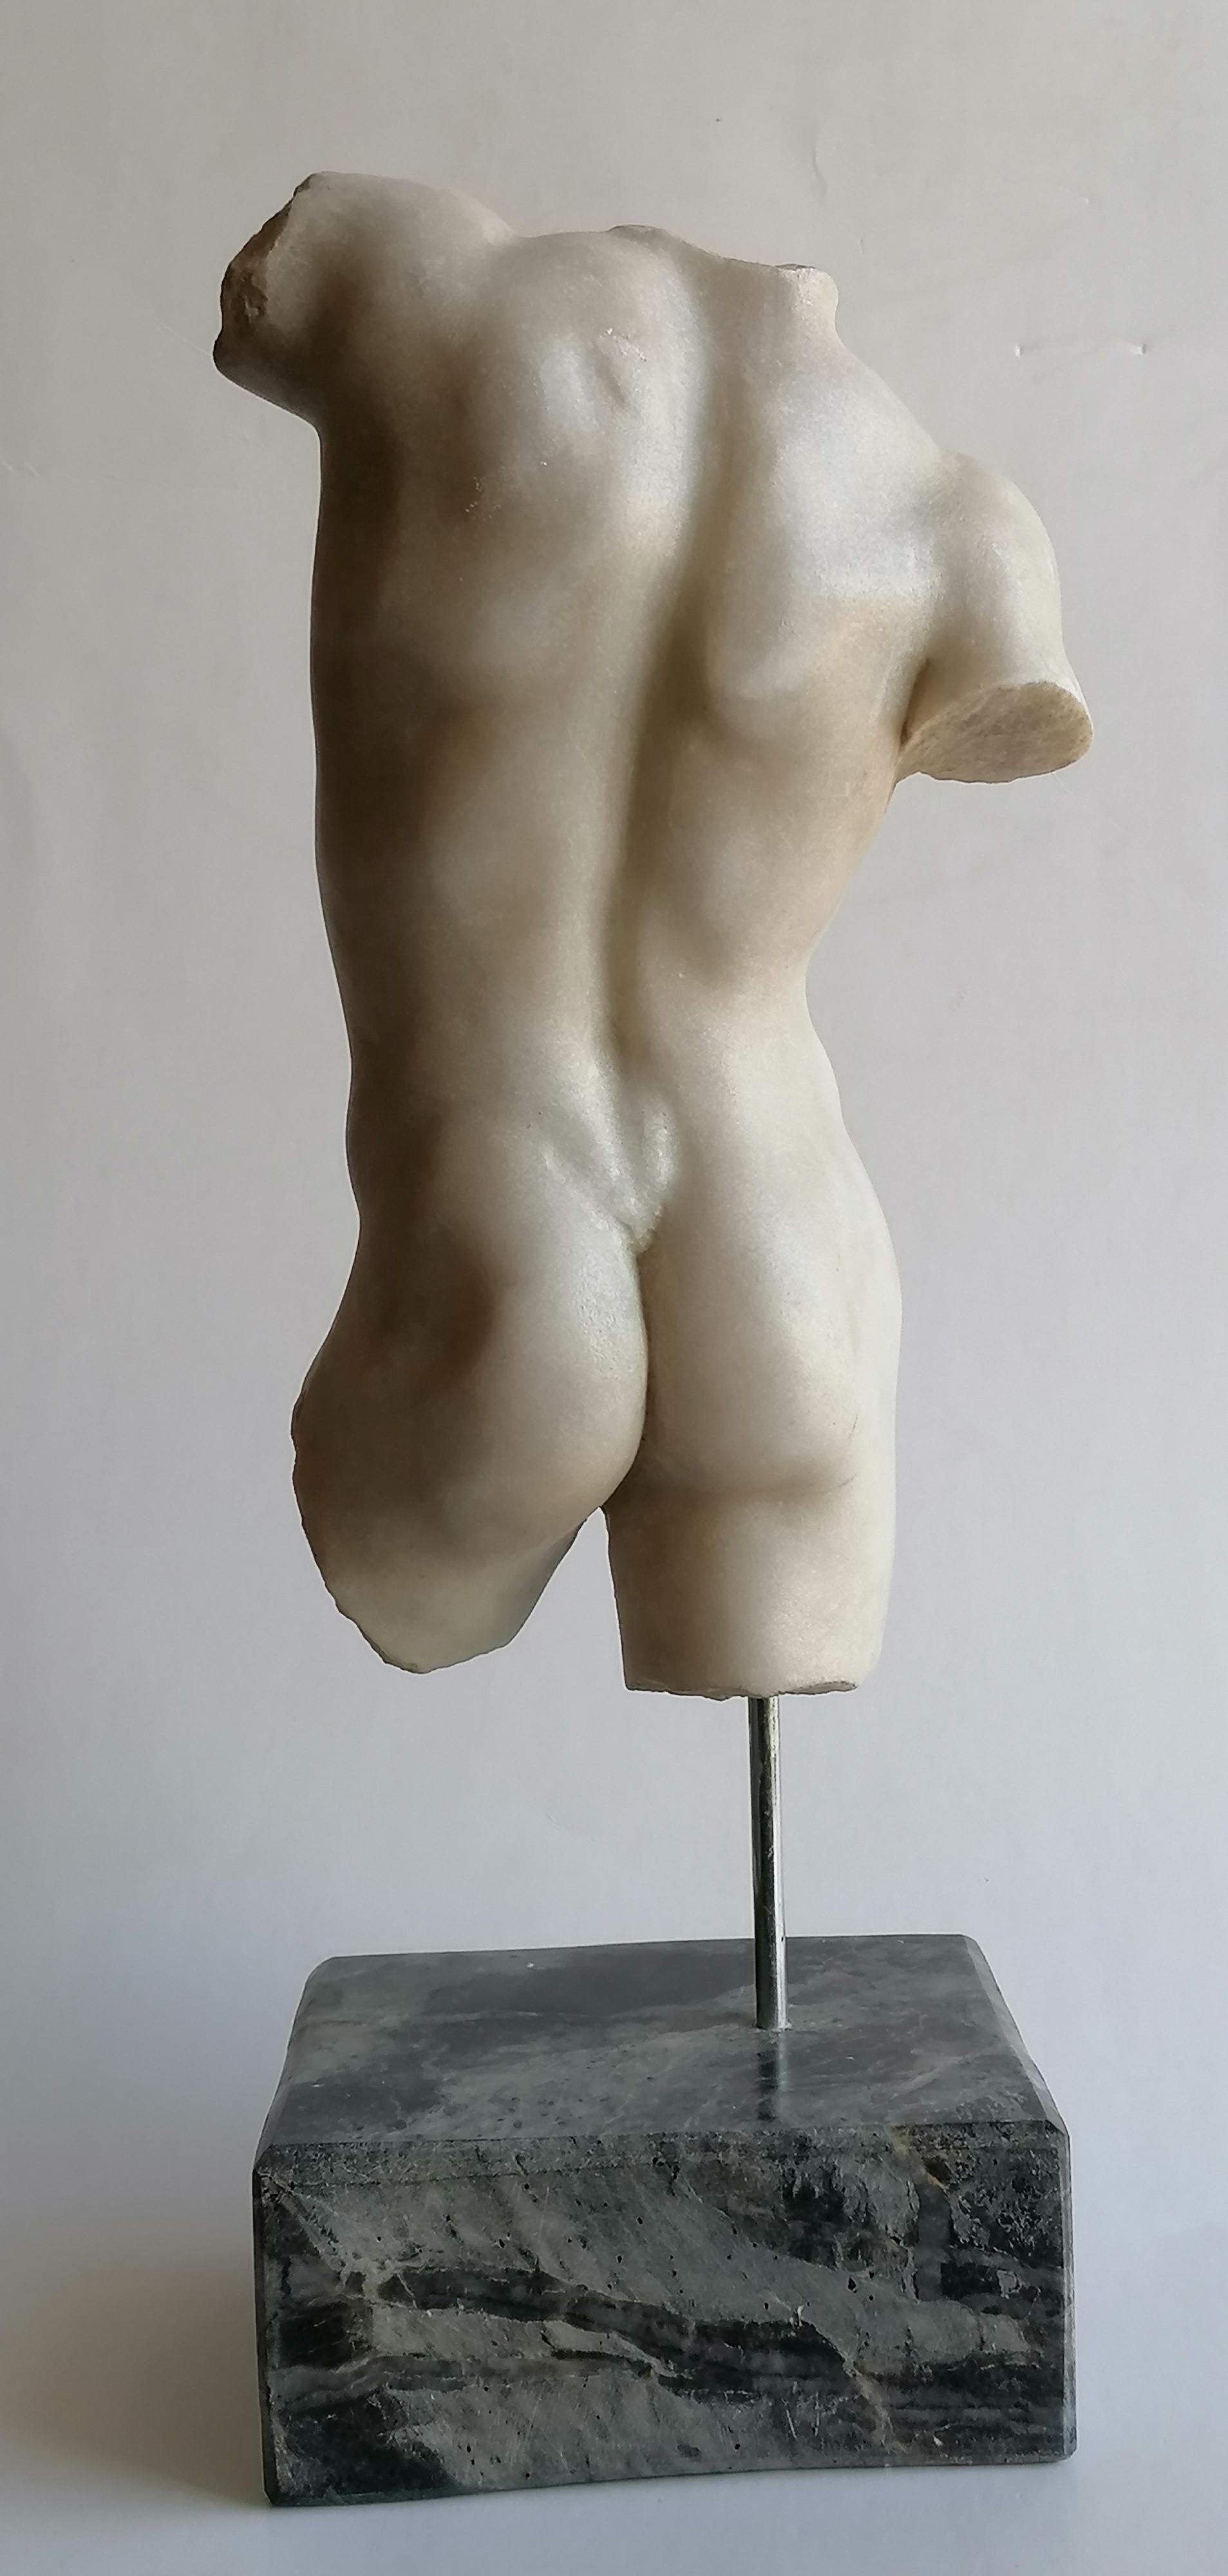 Italian Torso maschile classico scolpito su marmo bianco di Carrara